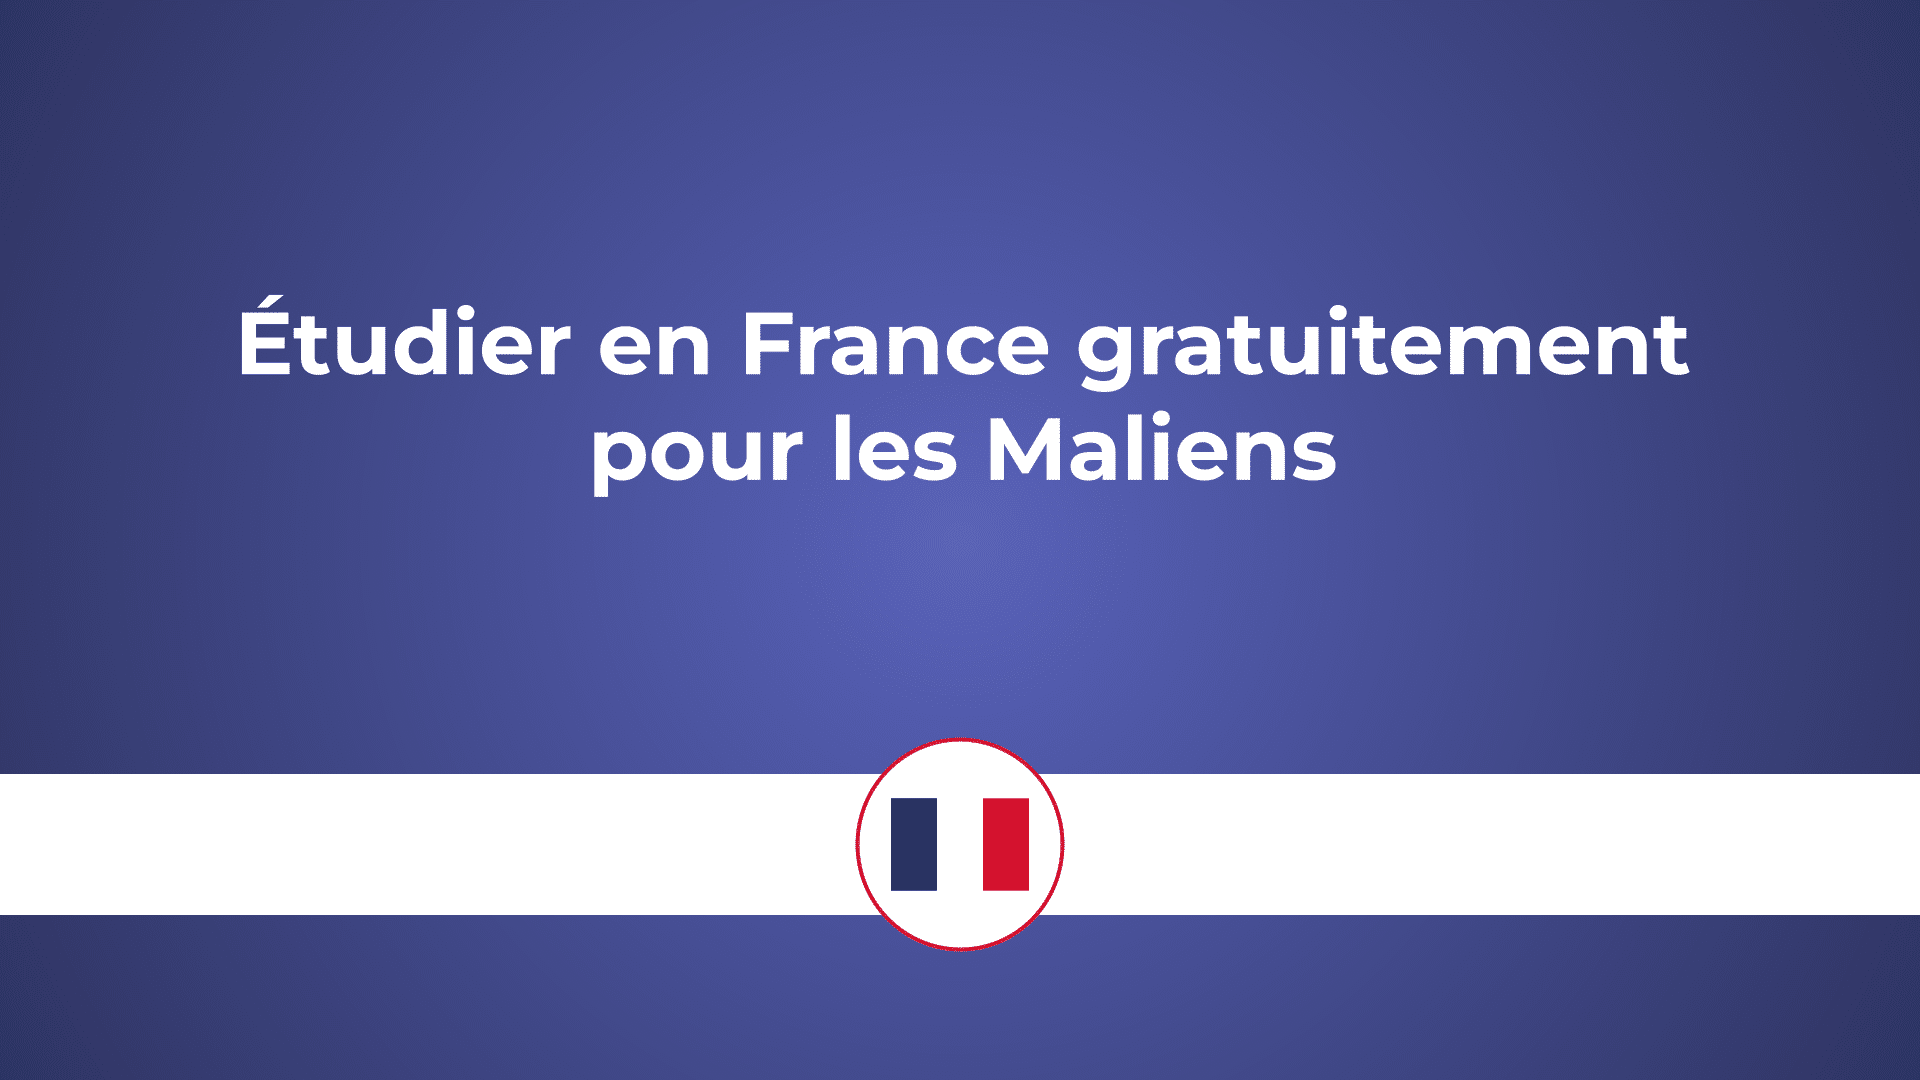 étudier en France gratuitement pour maliens